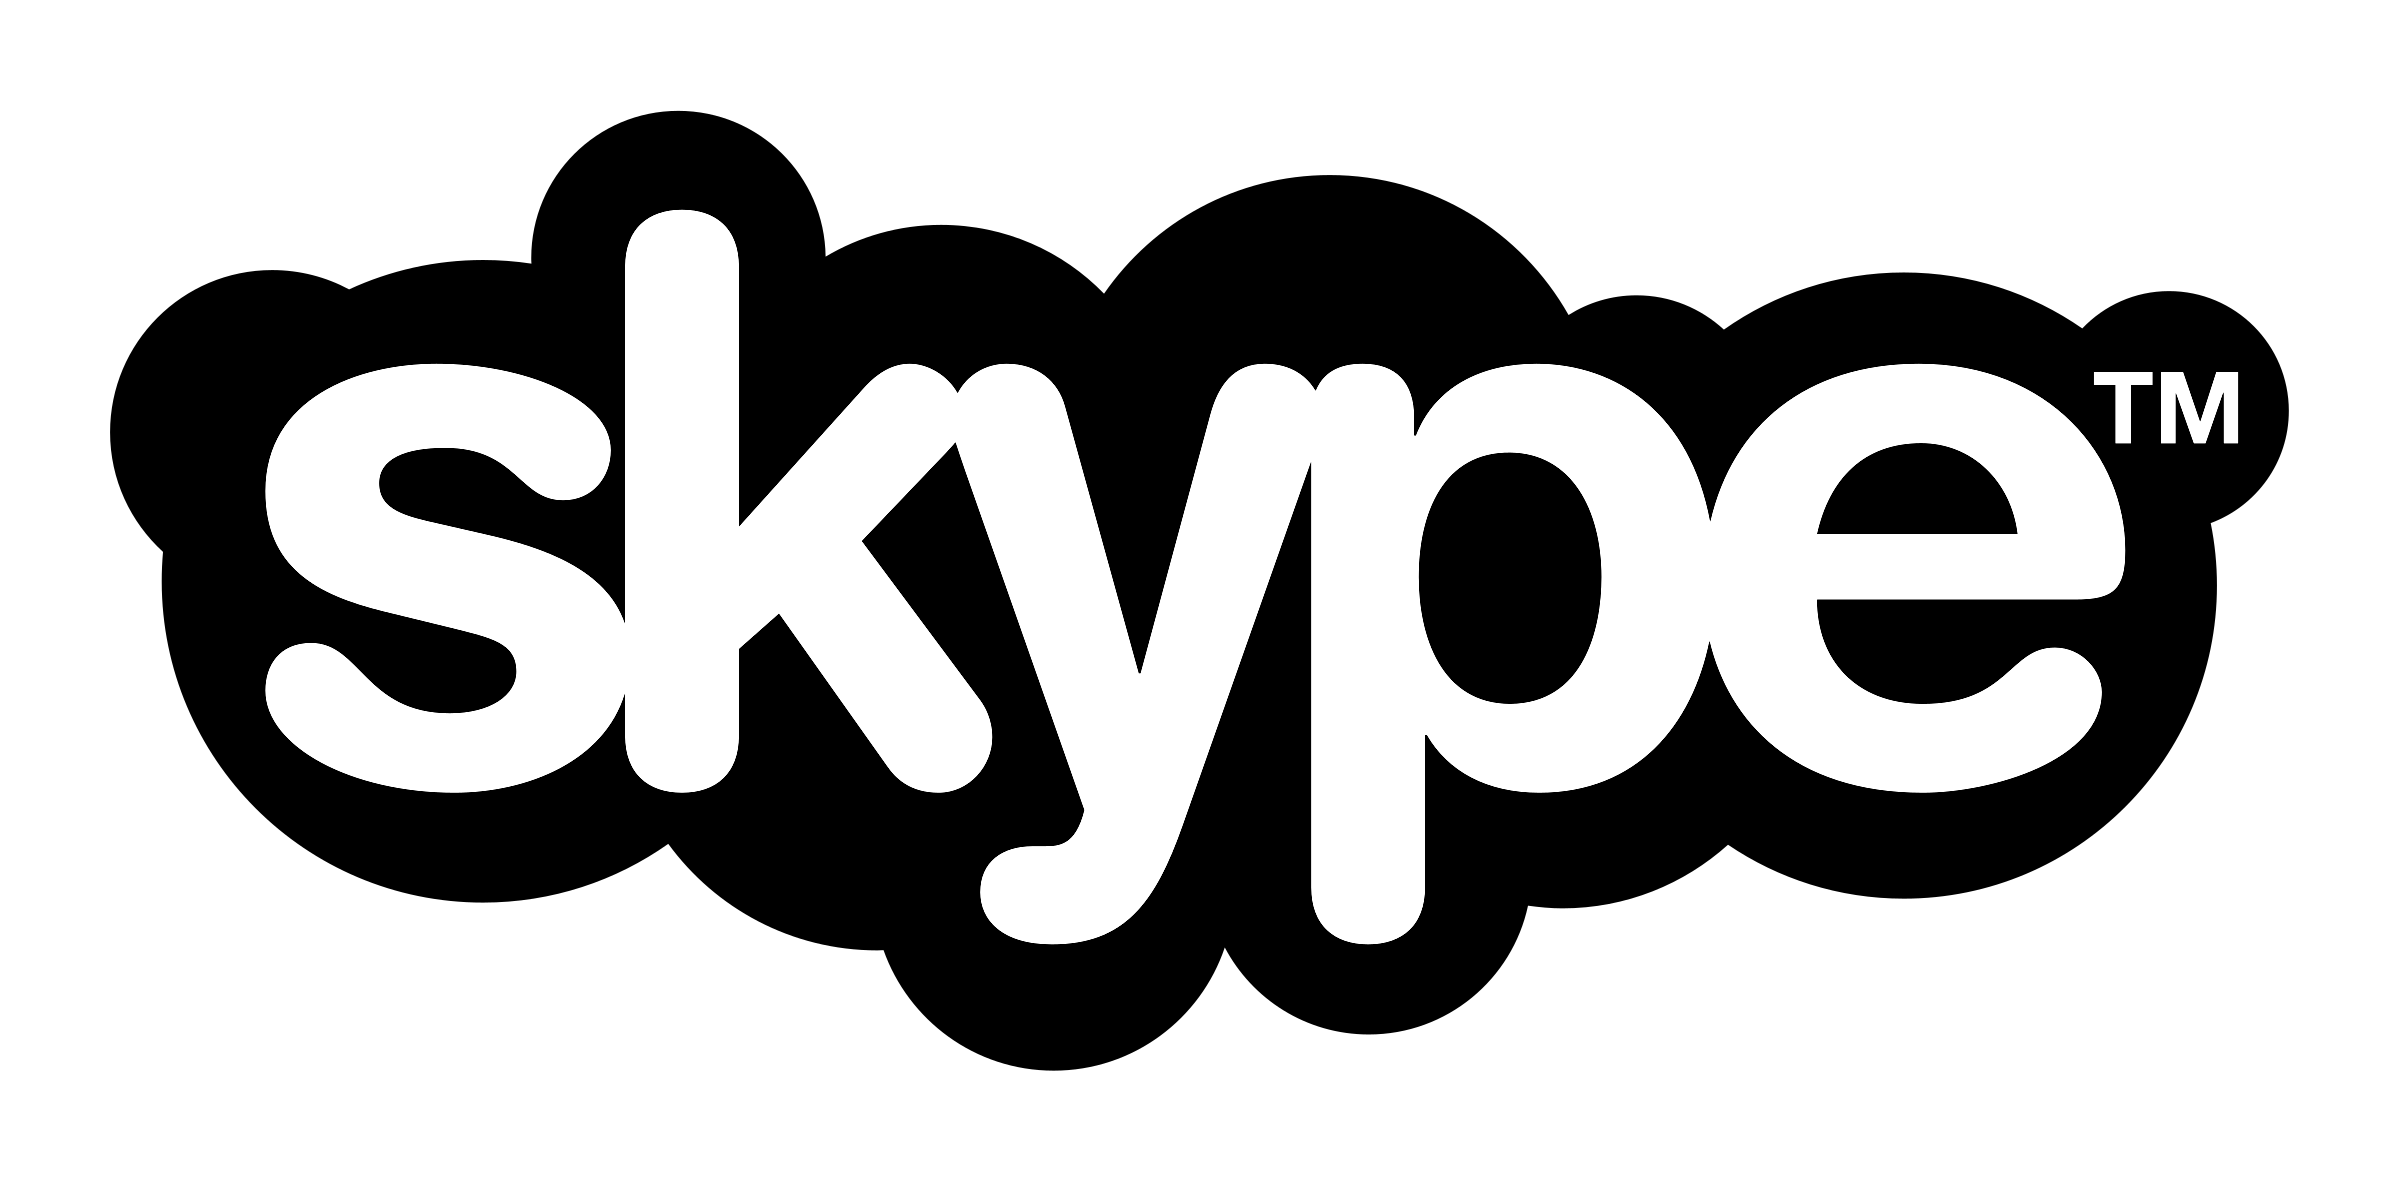 Circled Skype Logo Png Image 